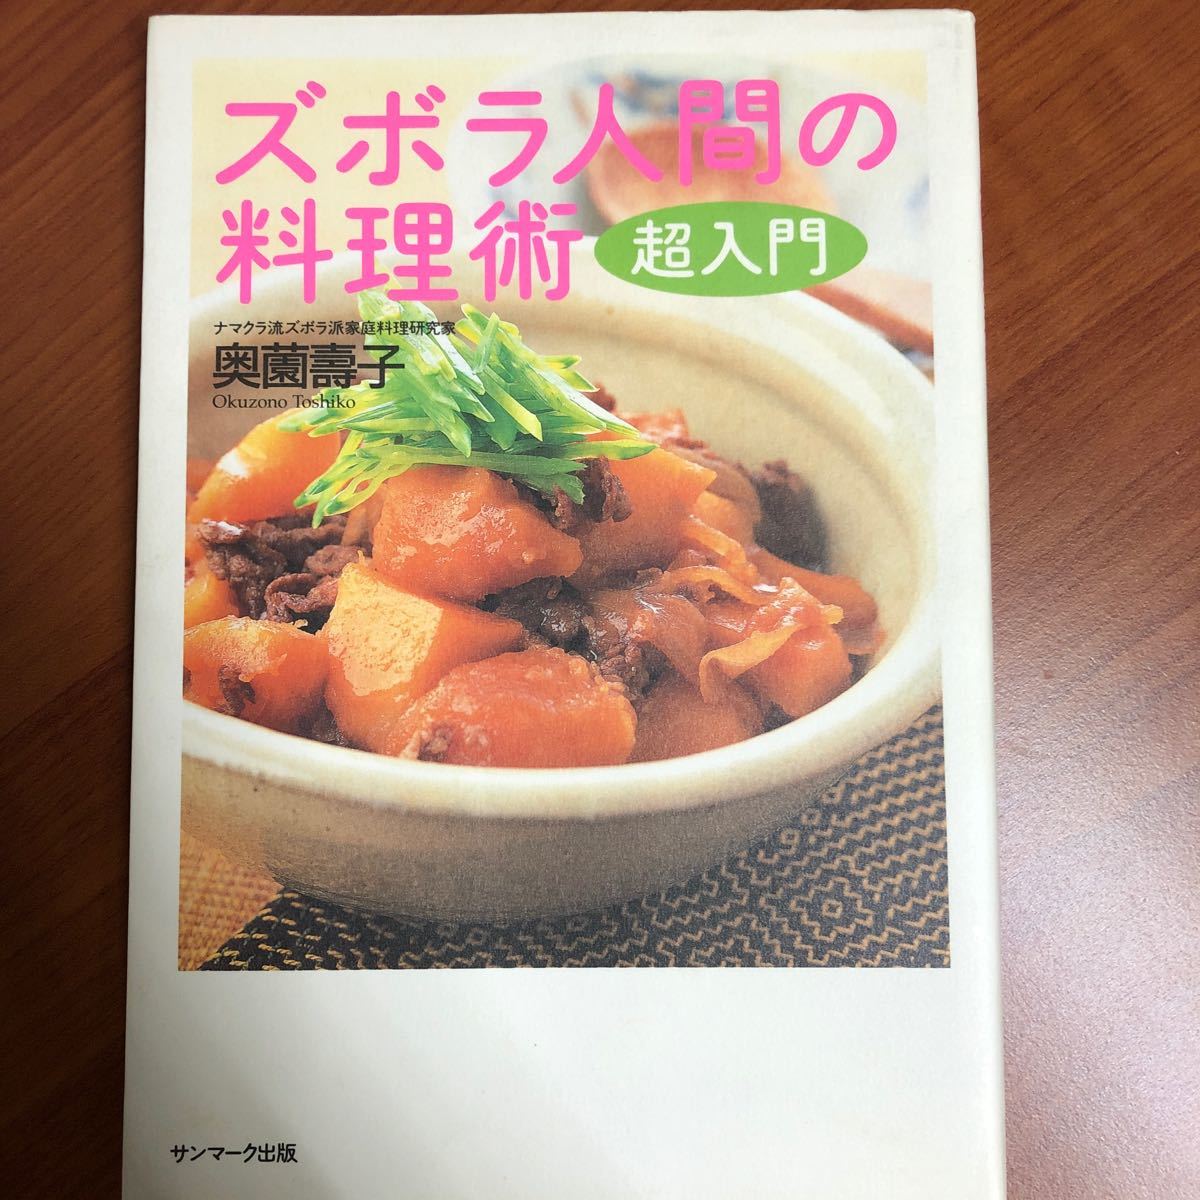 ズボラ人間の料理術超入門/奥薗壽子/レシピ